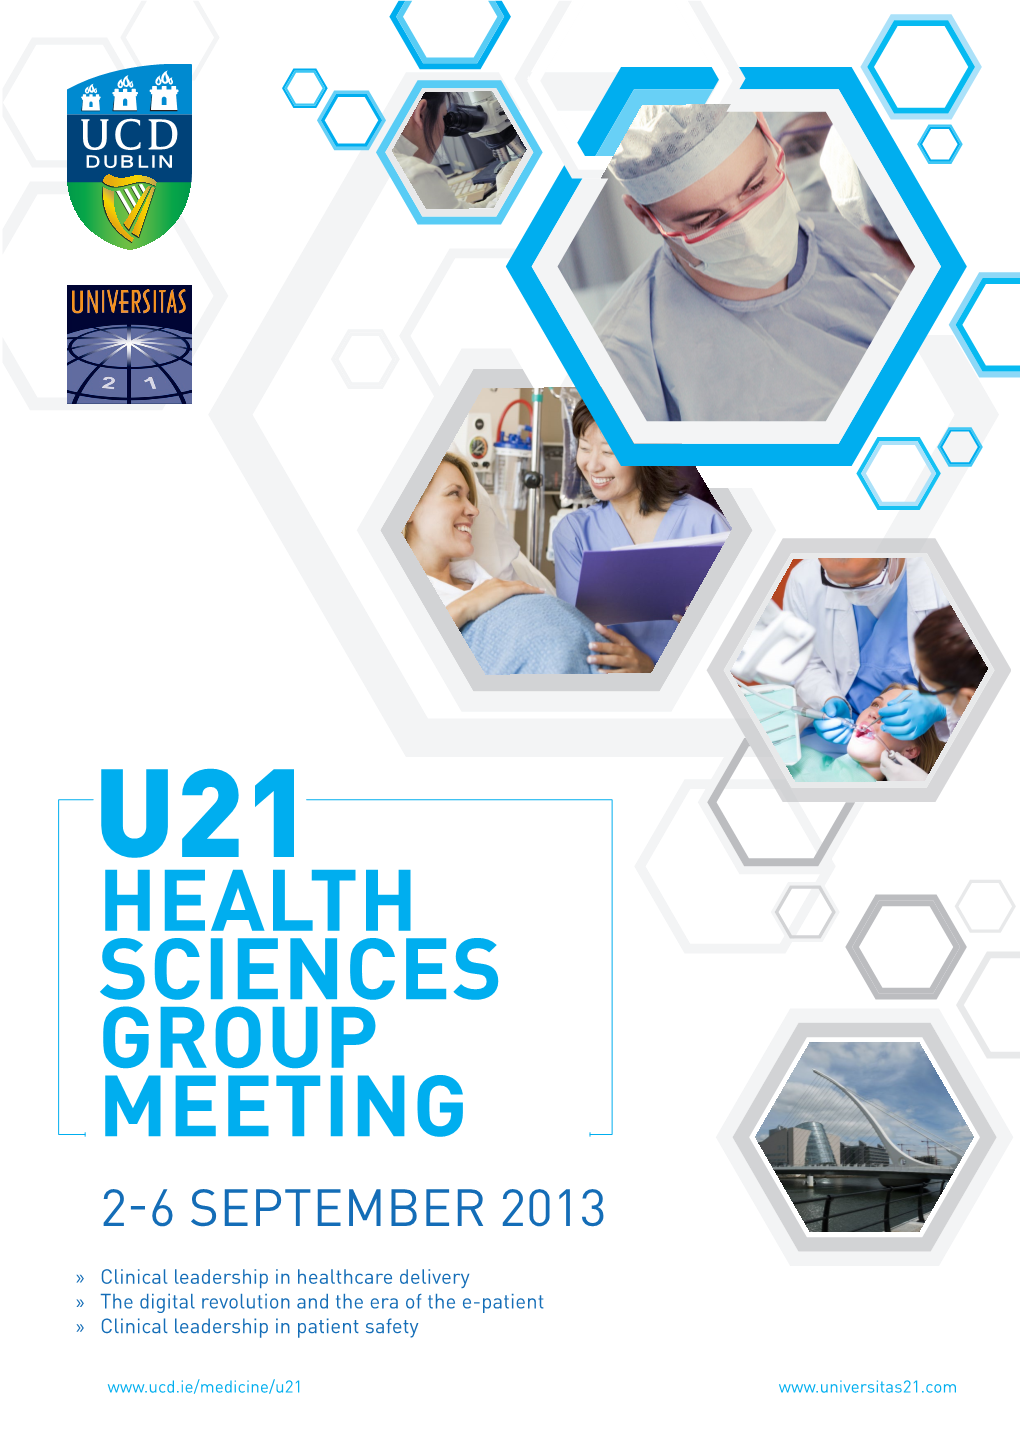 U21 Health Sciences Group Meeting 2-6 September 2013